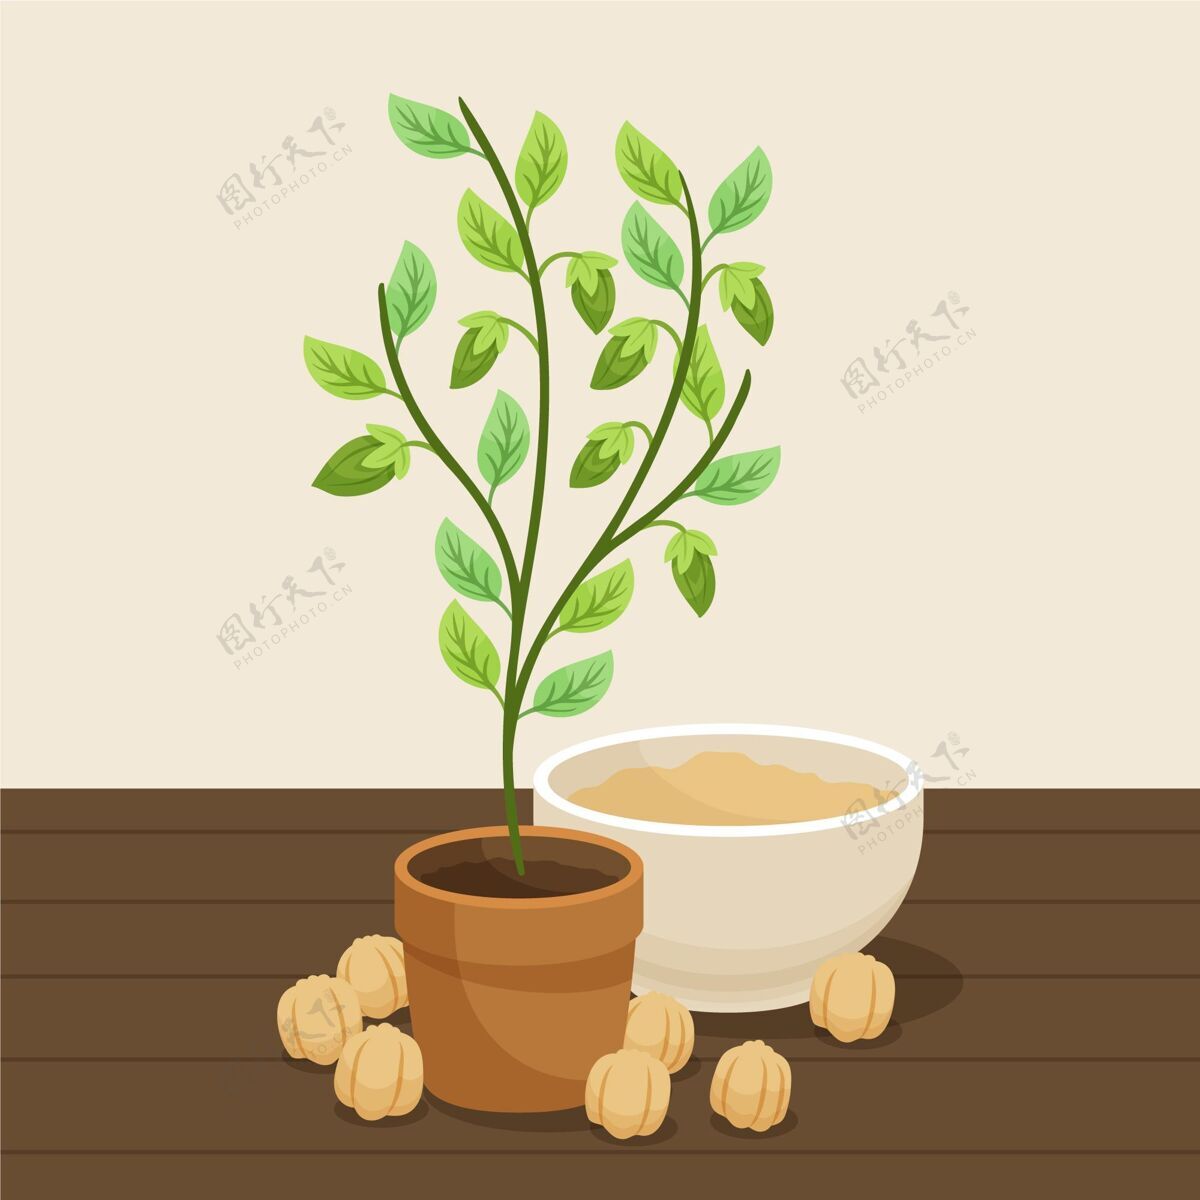 插图手绘鹰嘴豆和植物插图豆类健康叶龄